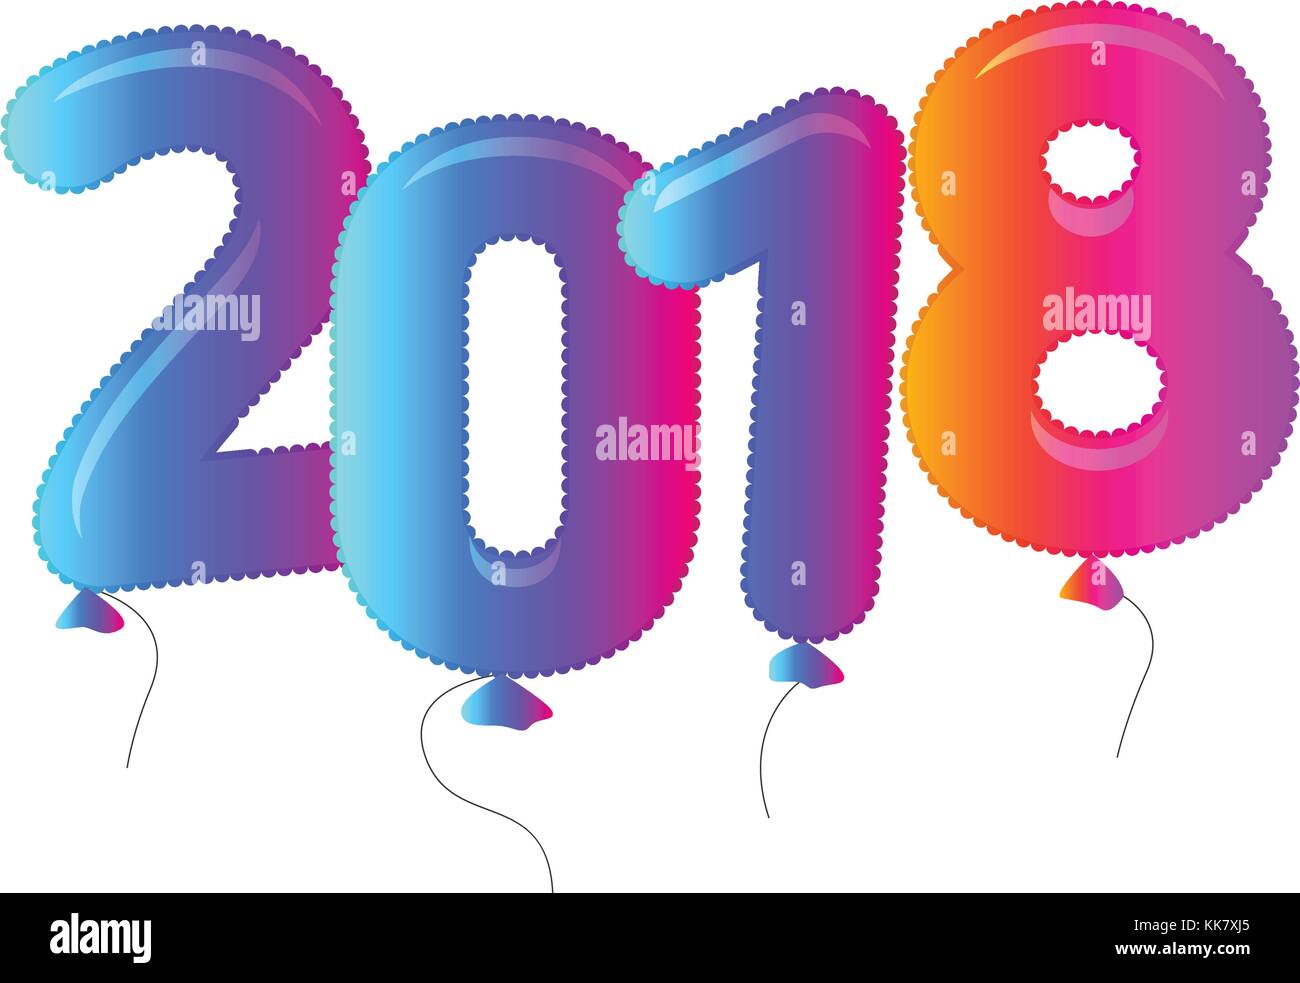 Bunte Luftballons, Frohes neues Jahr Vector Logo. Stock Vektor